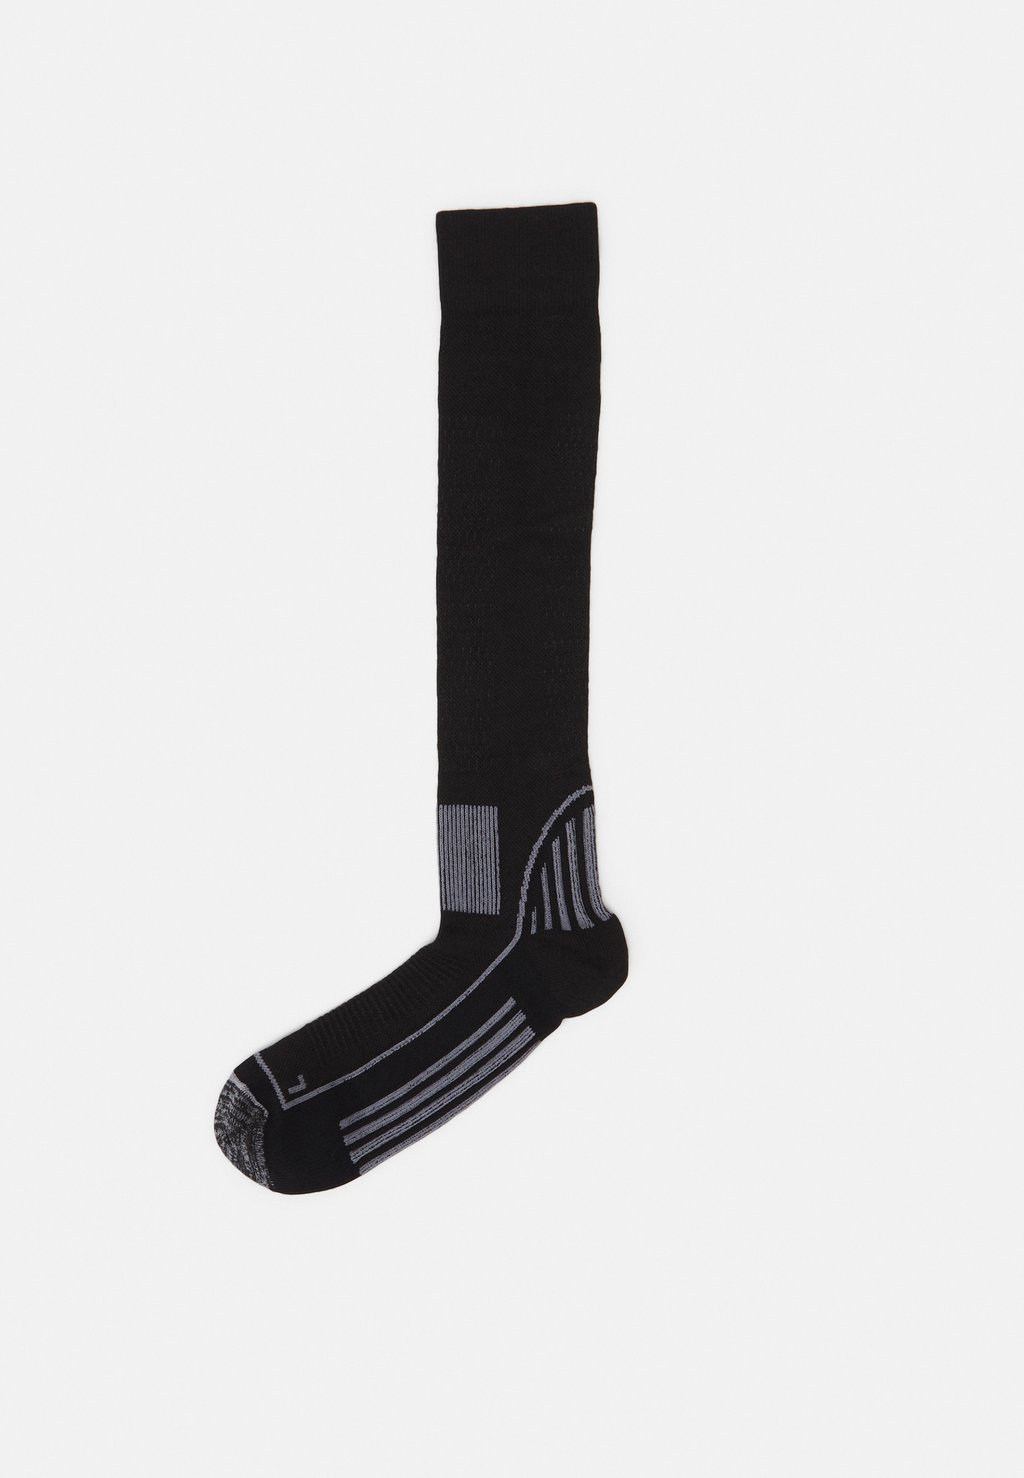 одеяло high peak outdoor blanket grey black 23535 Спортивные носки Ski Sock Unisex Peak Performance, цвет black/grey melange